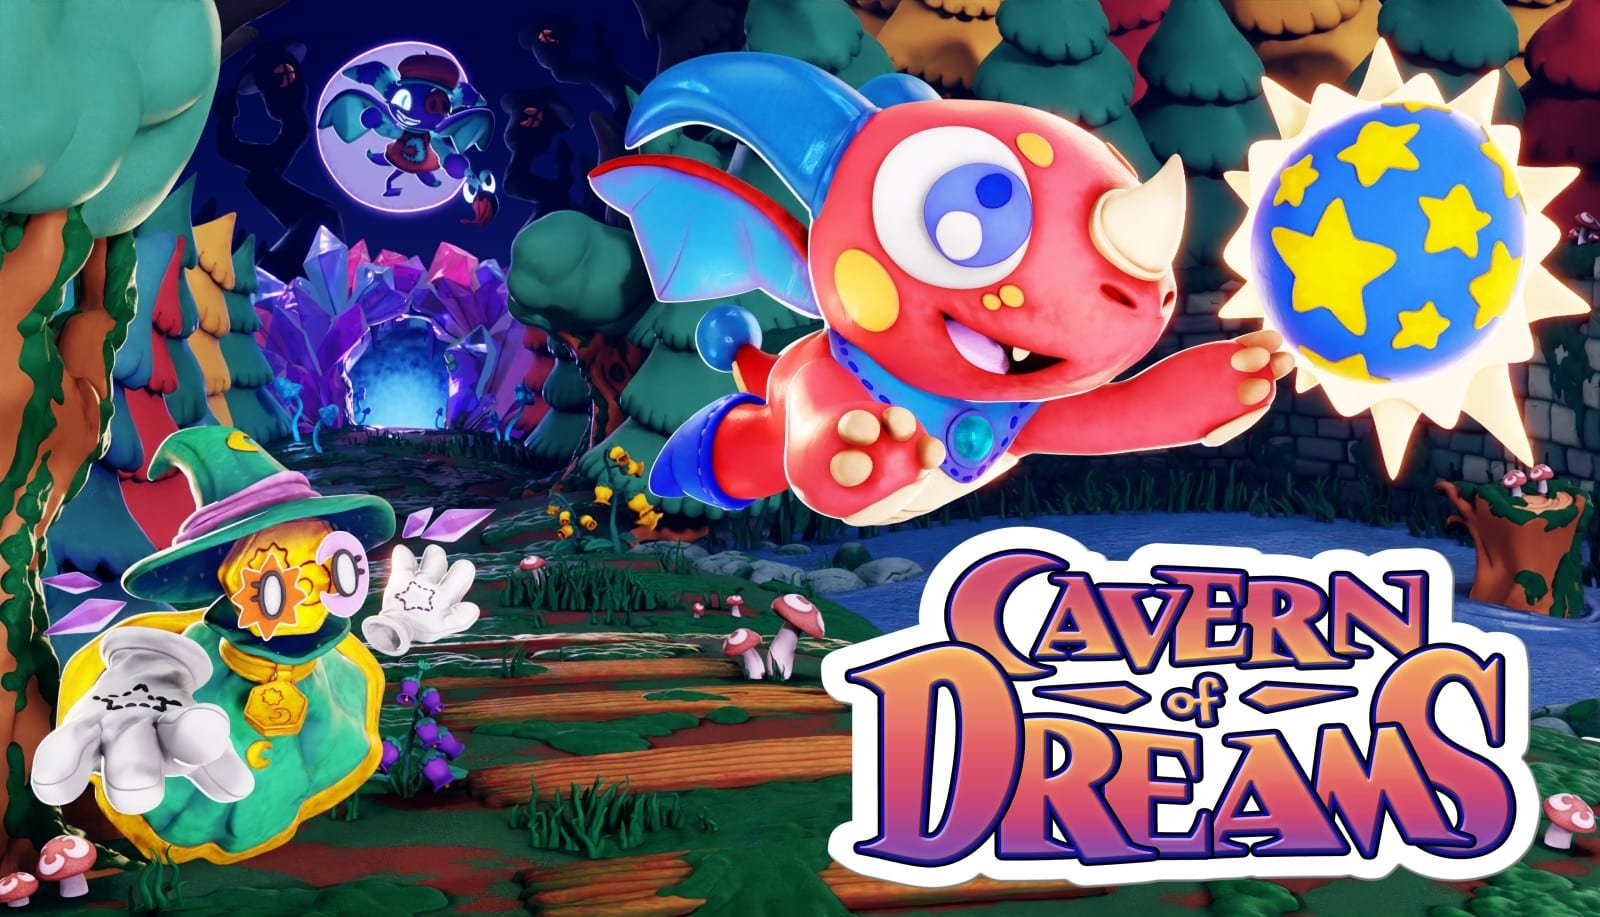 Cavern of Dreams : embarquez pour une aventure nostalgique inspirée de la N64, le jeu sort aujourd’hui